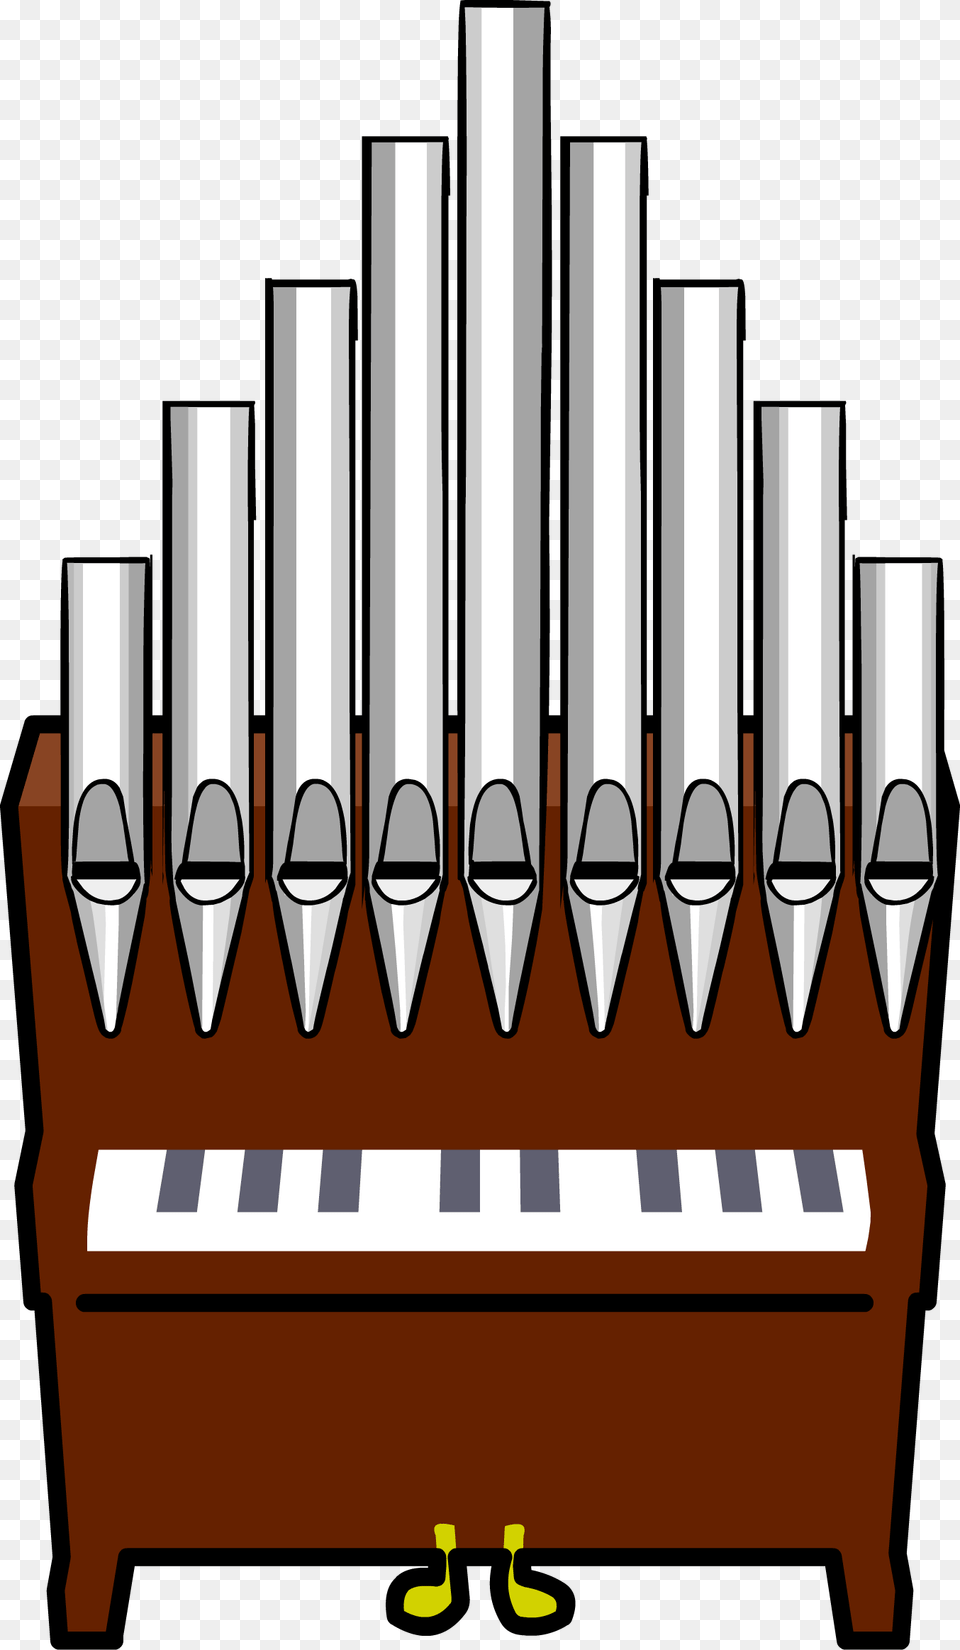 Image Pipe Organ Pipe Organ Clip Art, Musical Instrument Png